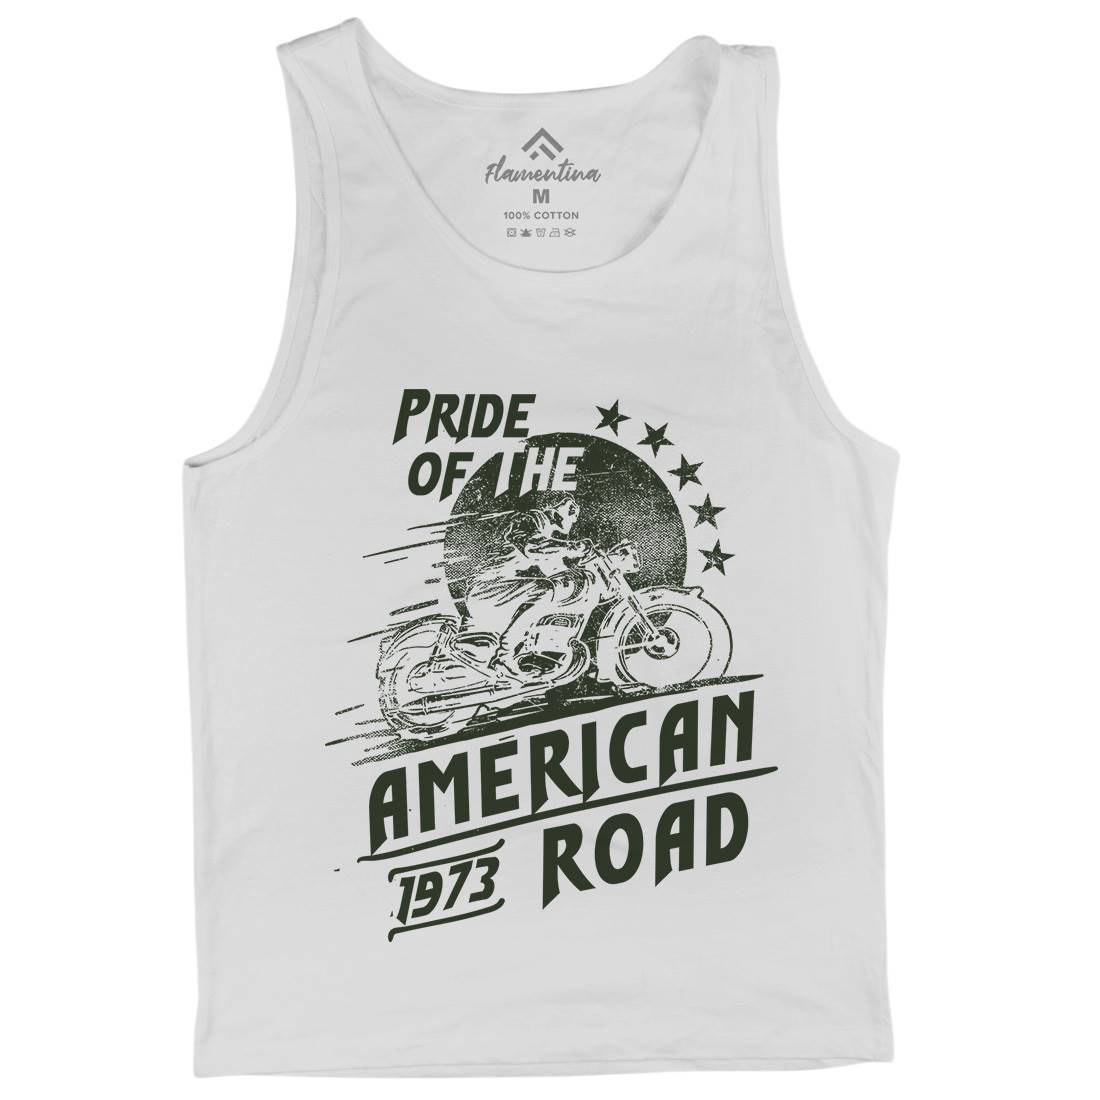 American Pride Mens Tank Top Vest Motorcycles C903